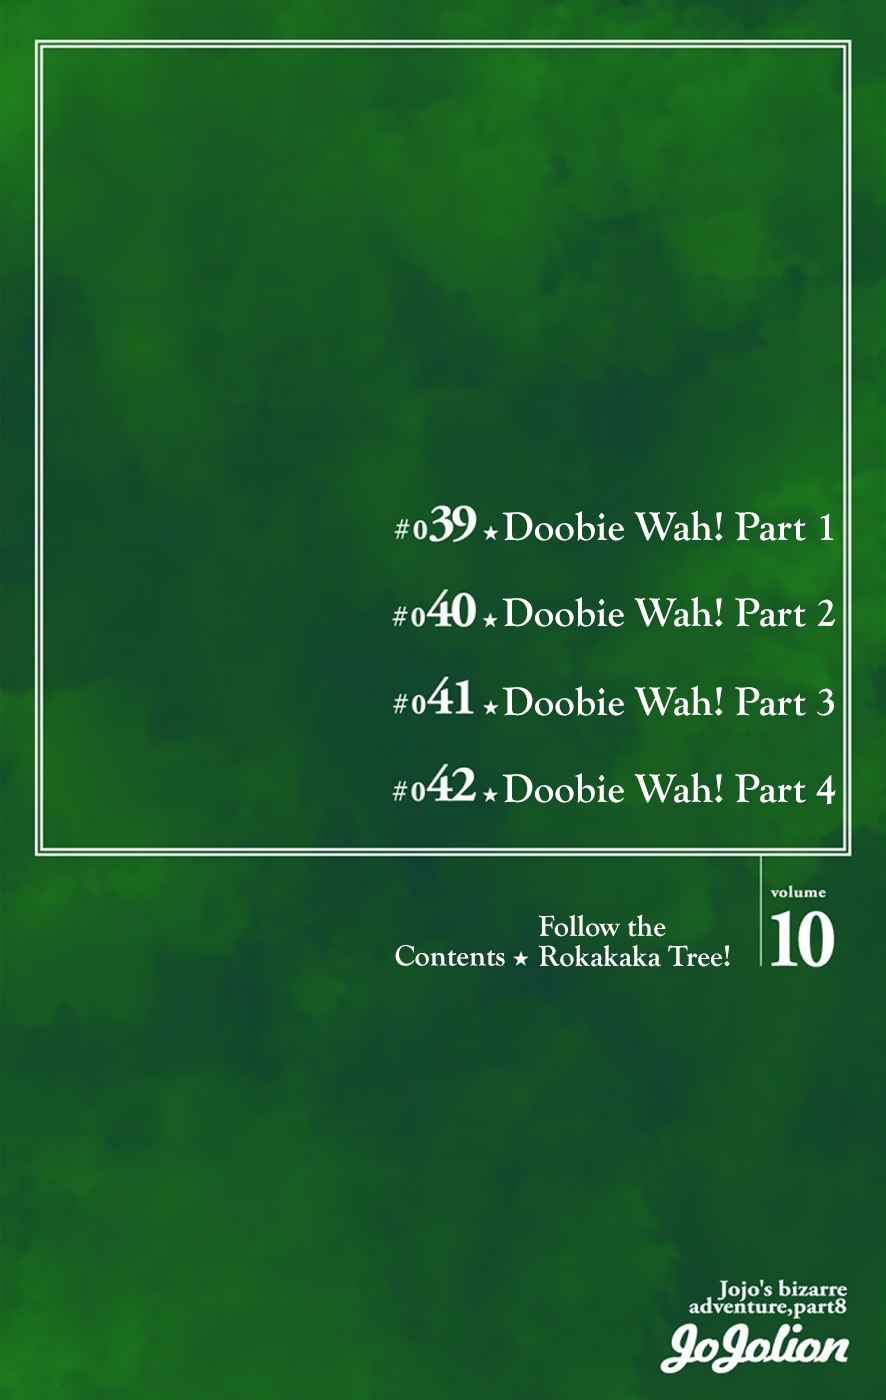 JoJo's Bizarre Adventure Part 8 JoJolion [Official Colored] Vol. 10 Ch. 39 Doobie Wah! Part 1